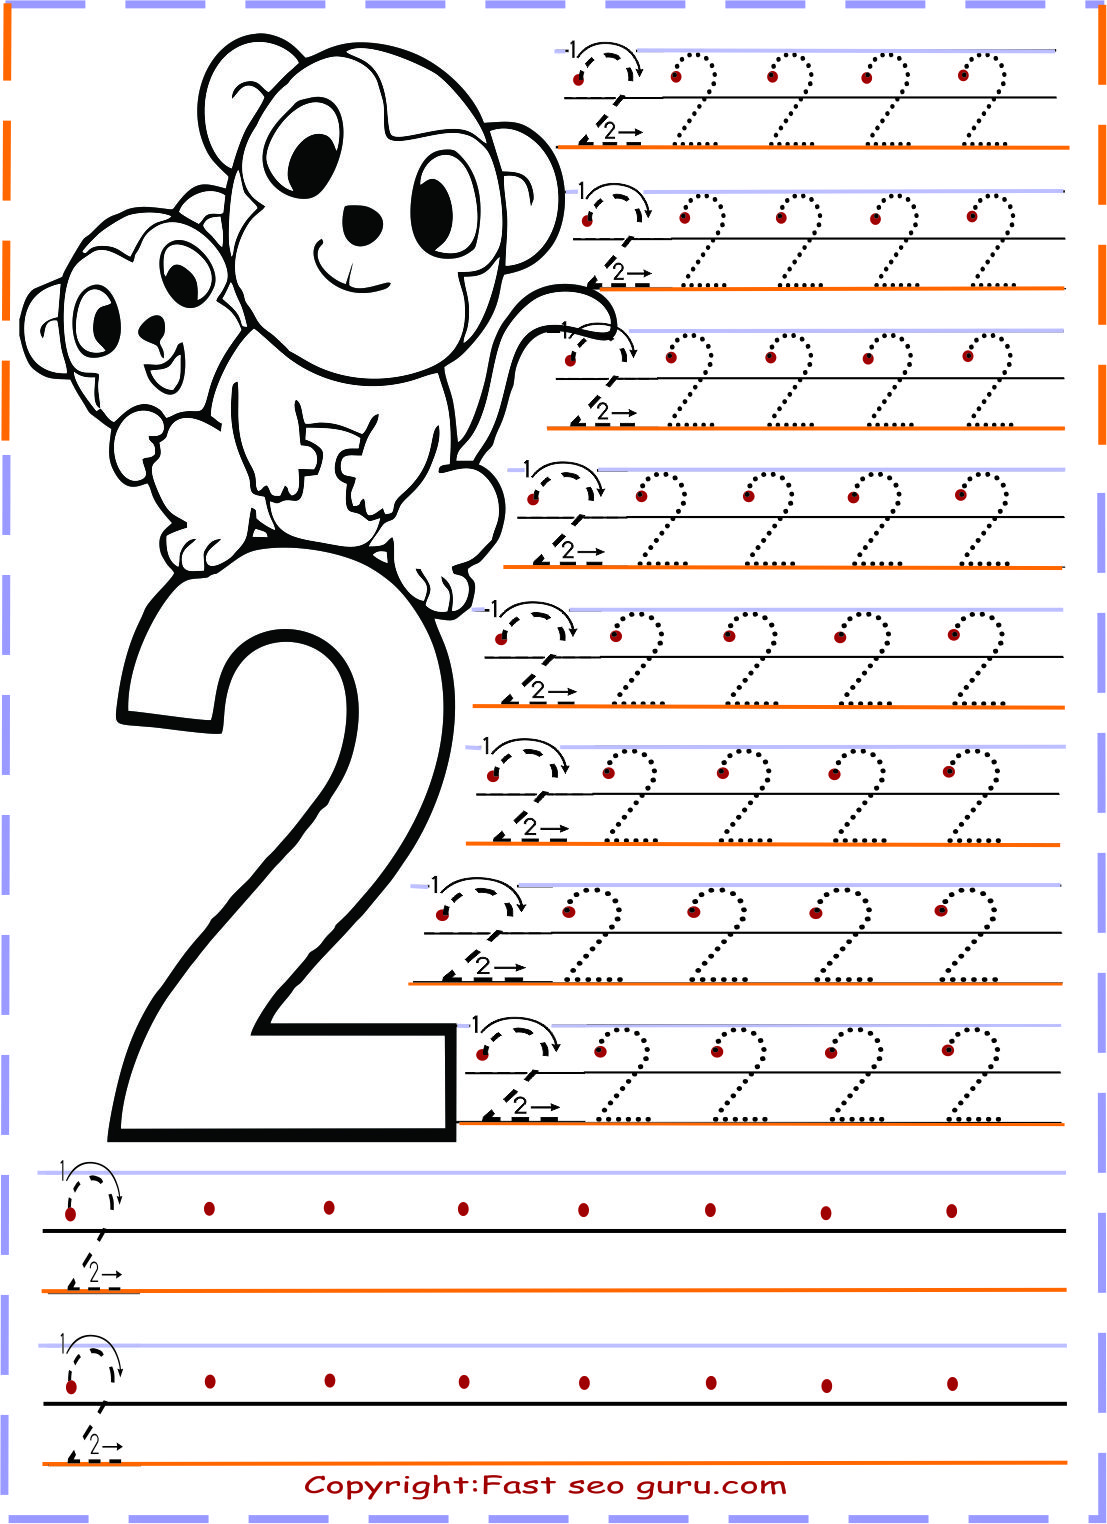 Free Printable Preschool Worksheets Tracing Numbers Teaching Treasure